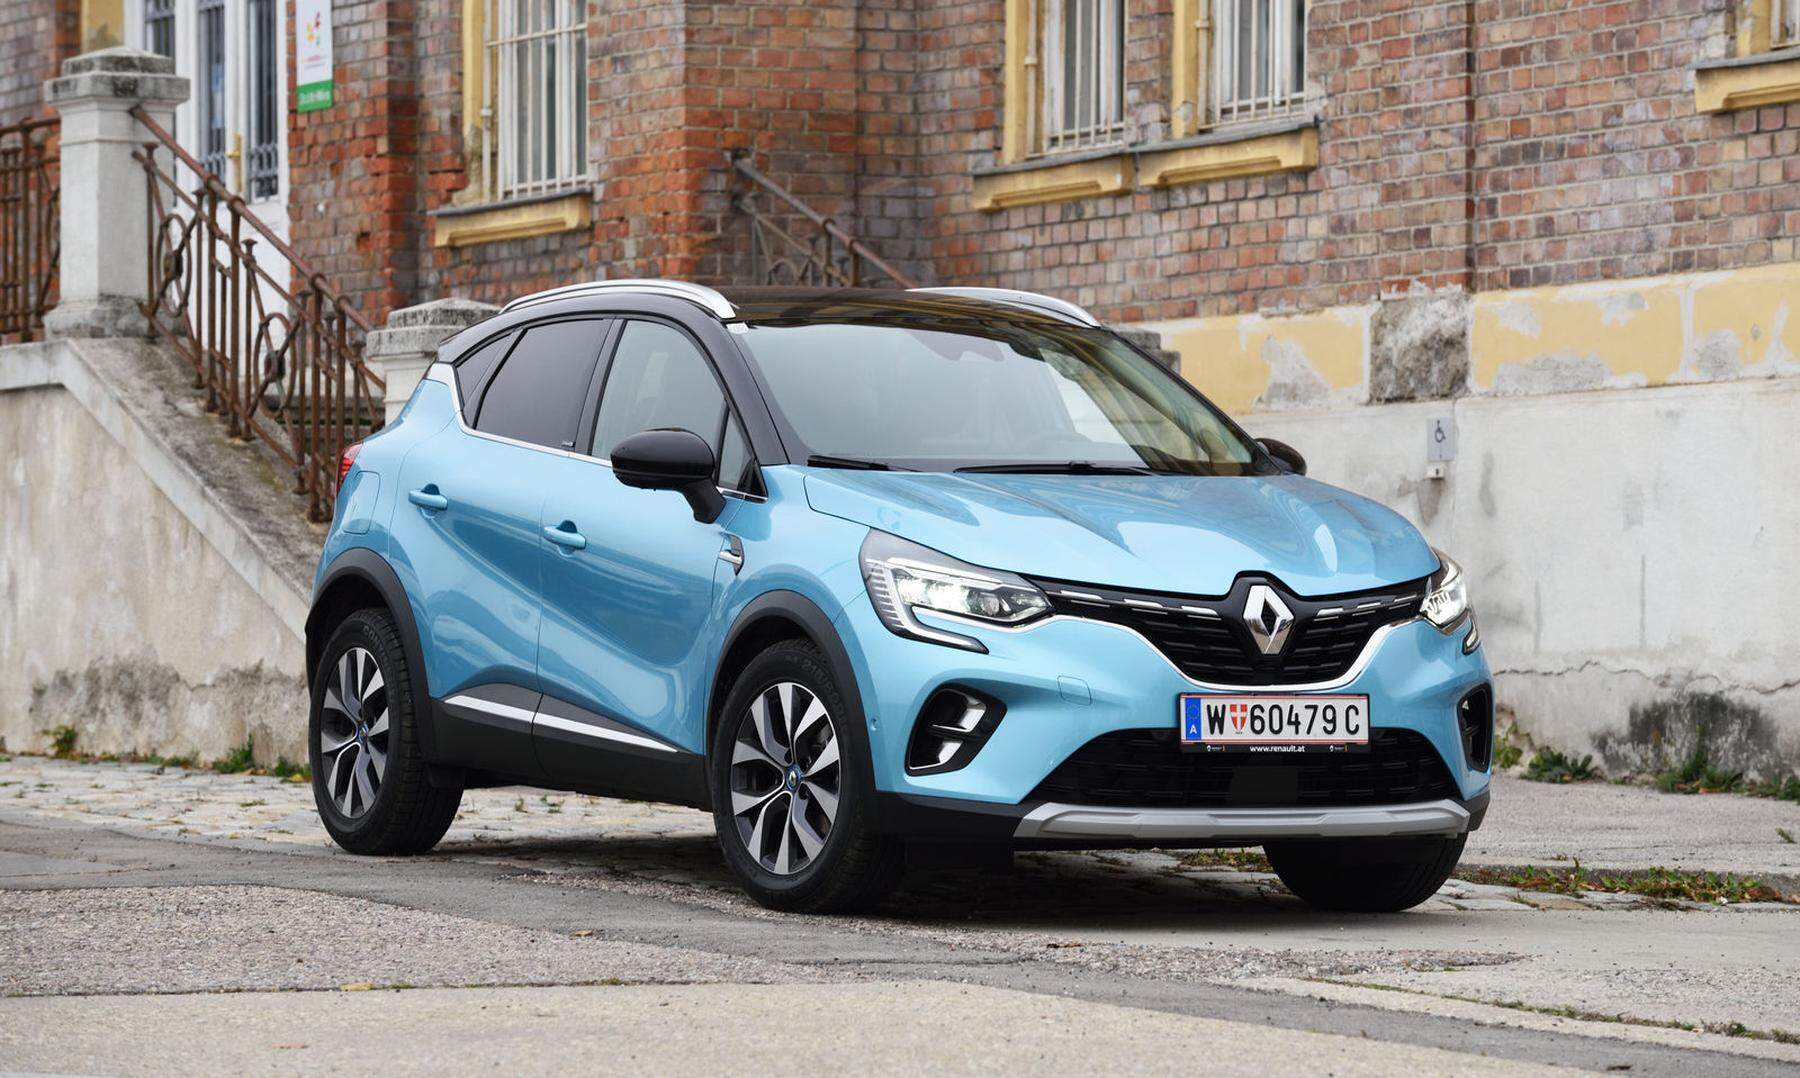 Test: Erste Ausfahrt mit dem neuen Renault Captur